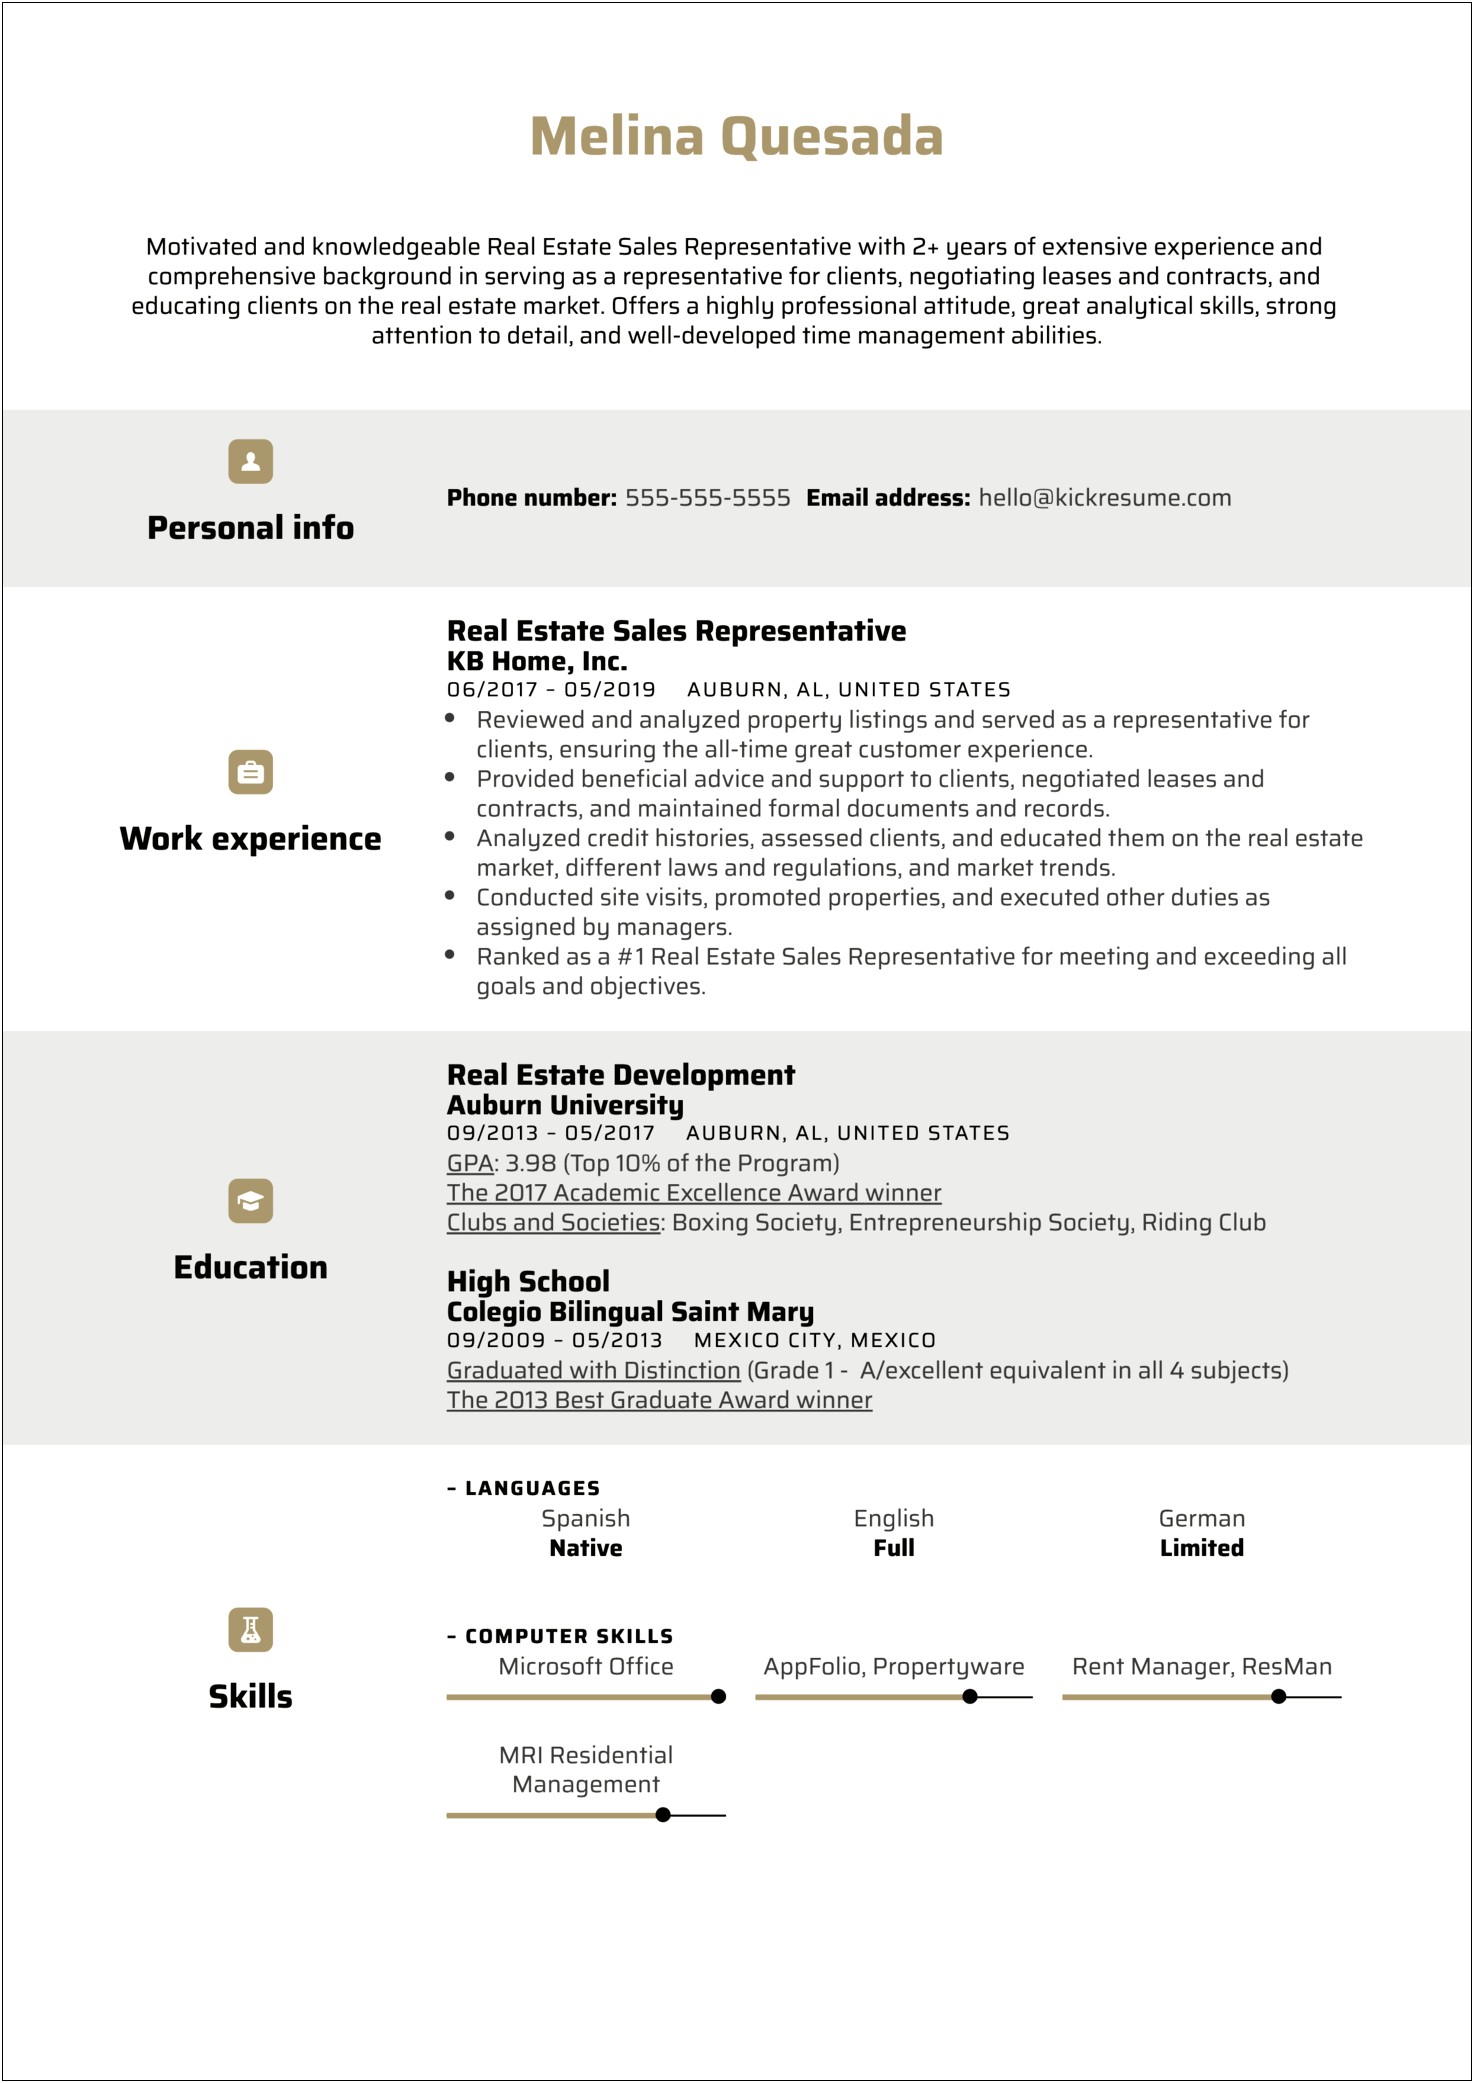 Sample Resume For Residentail Real Estate Broker